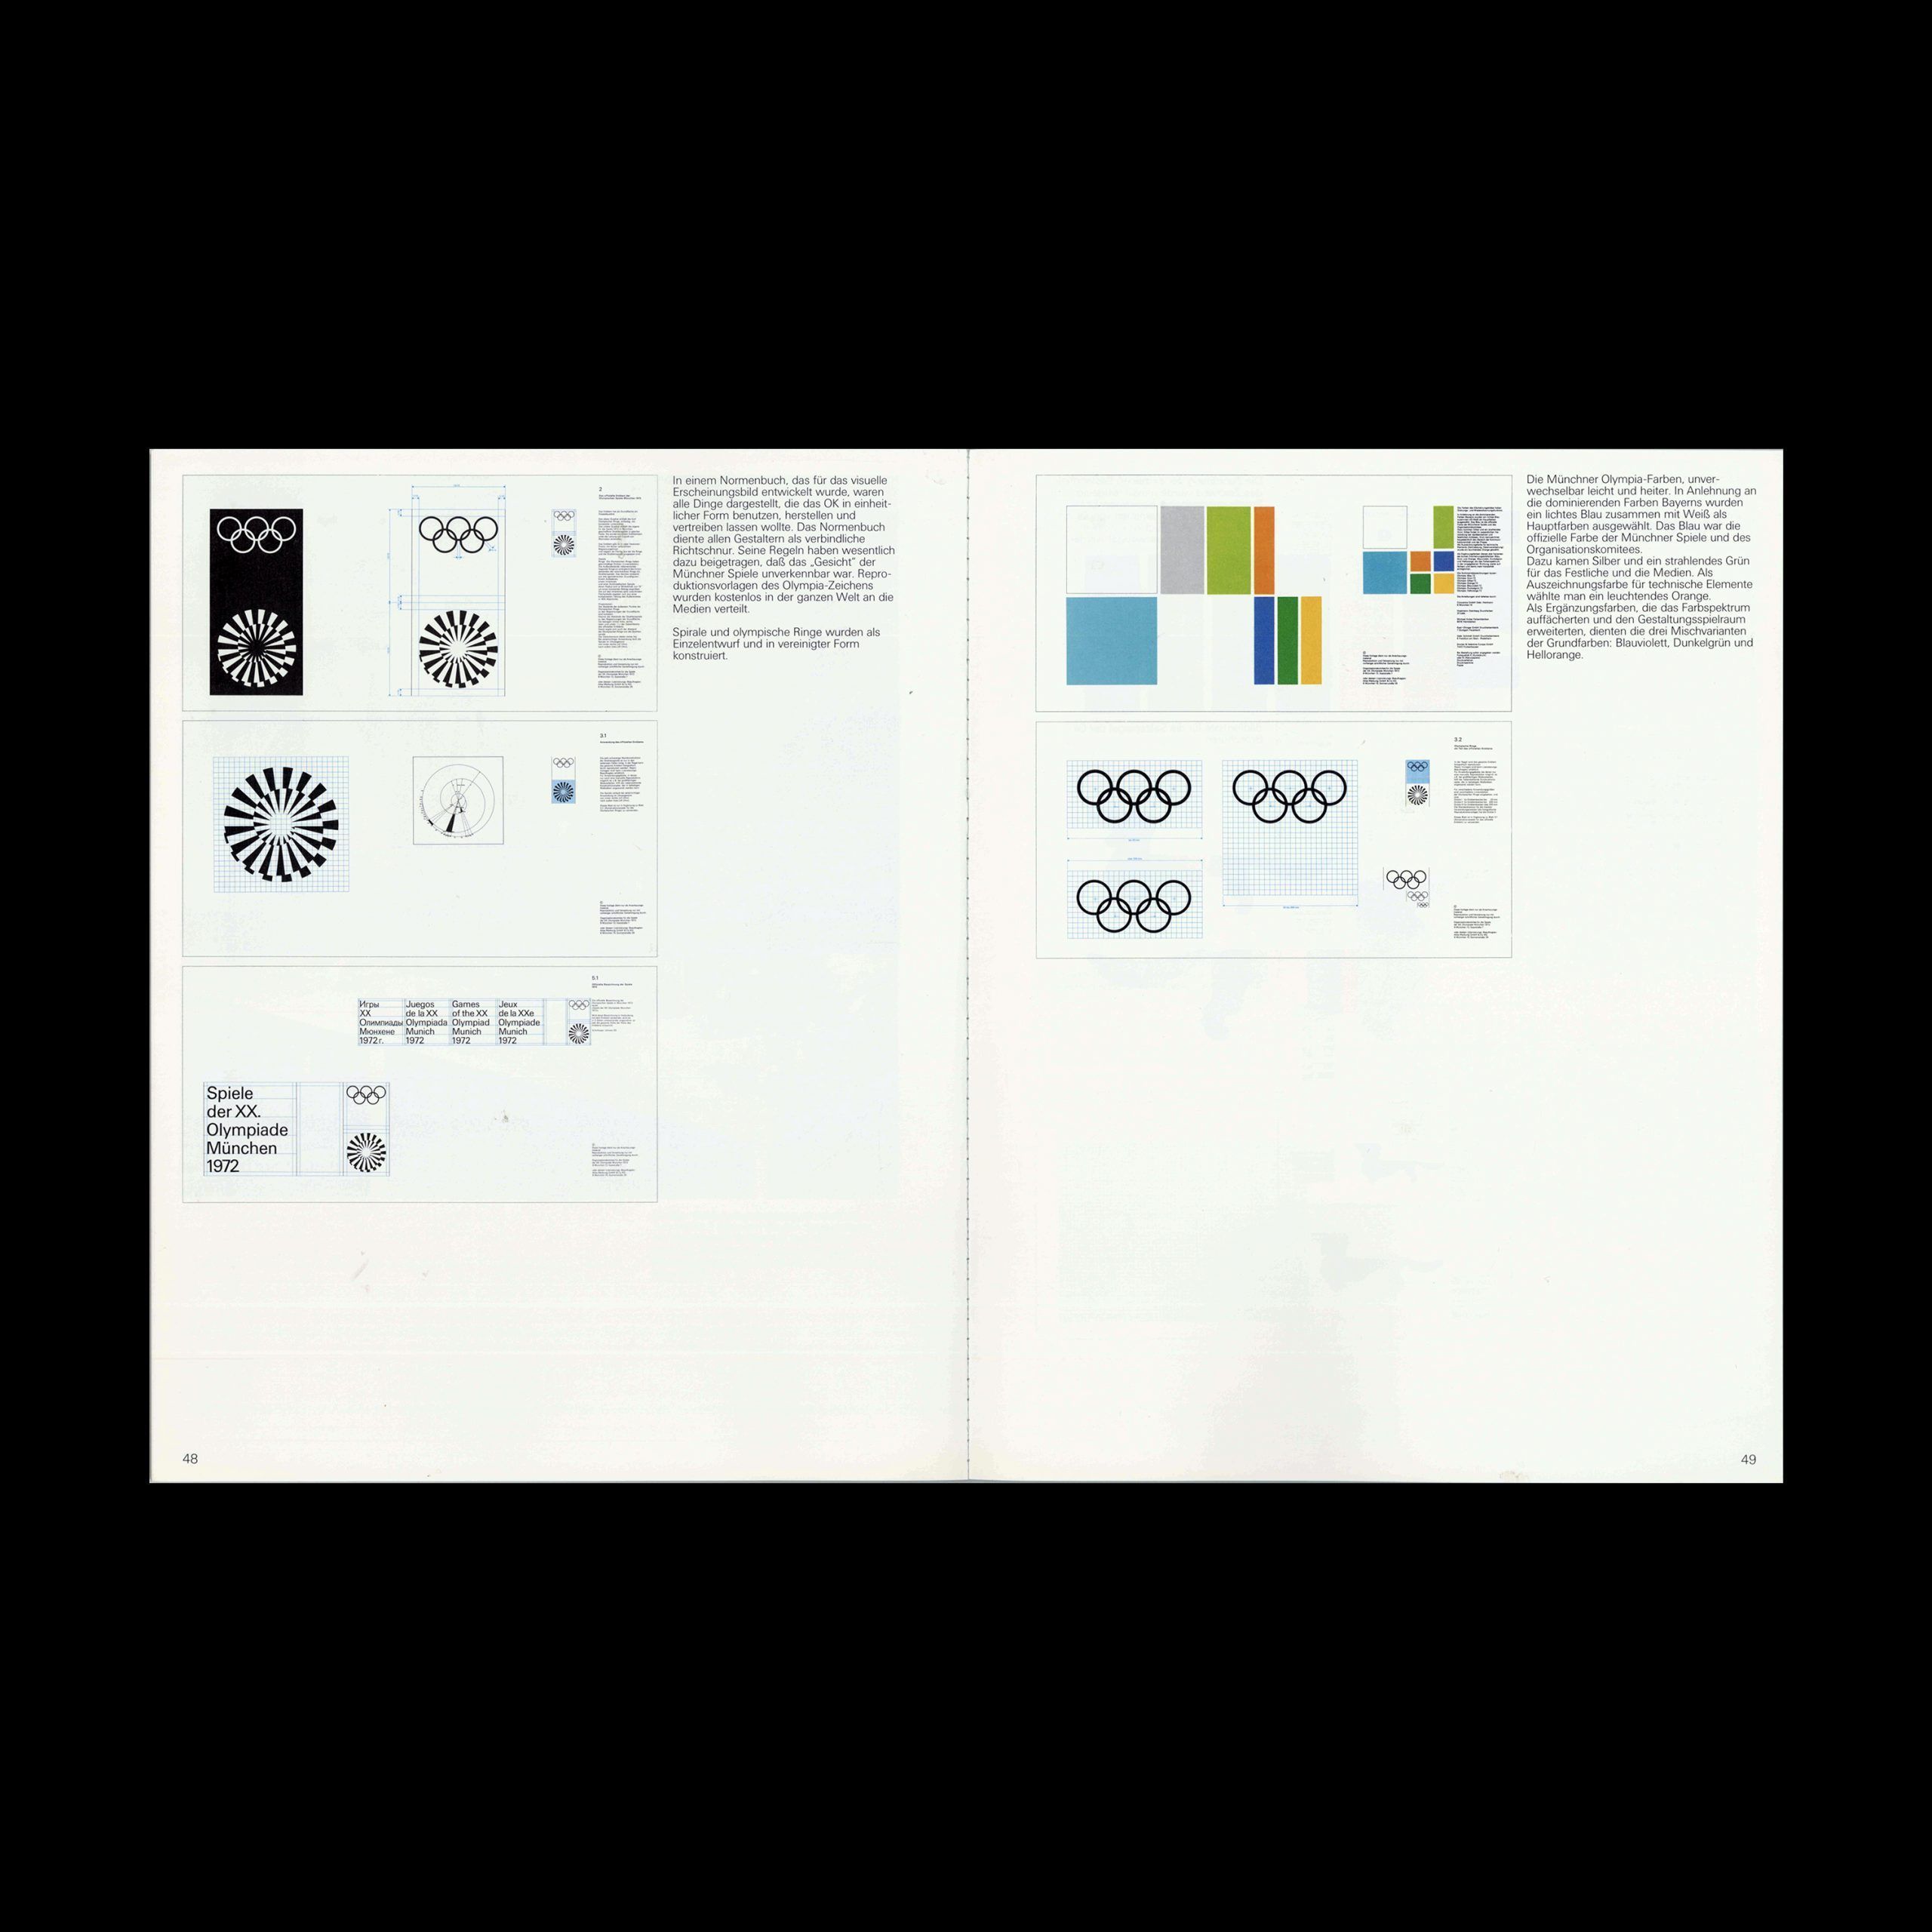 Kunst + Design, Kultur Olympia, Willi Daume, Preisträger der Stankowski-Stiftung, 1986